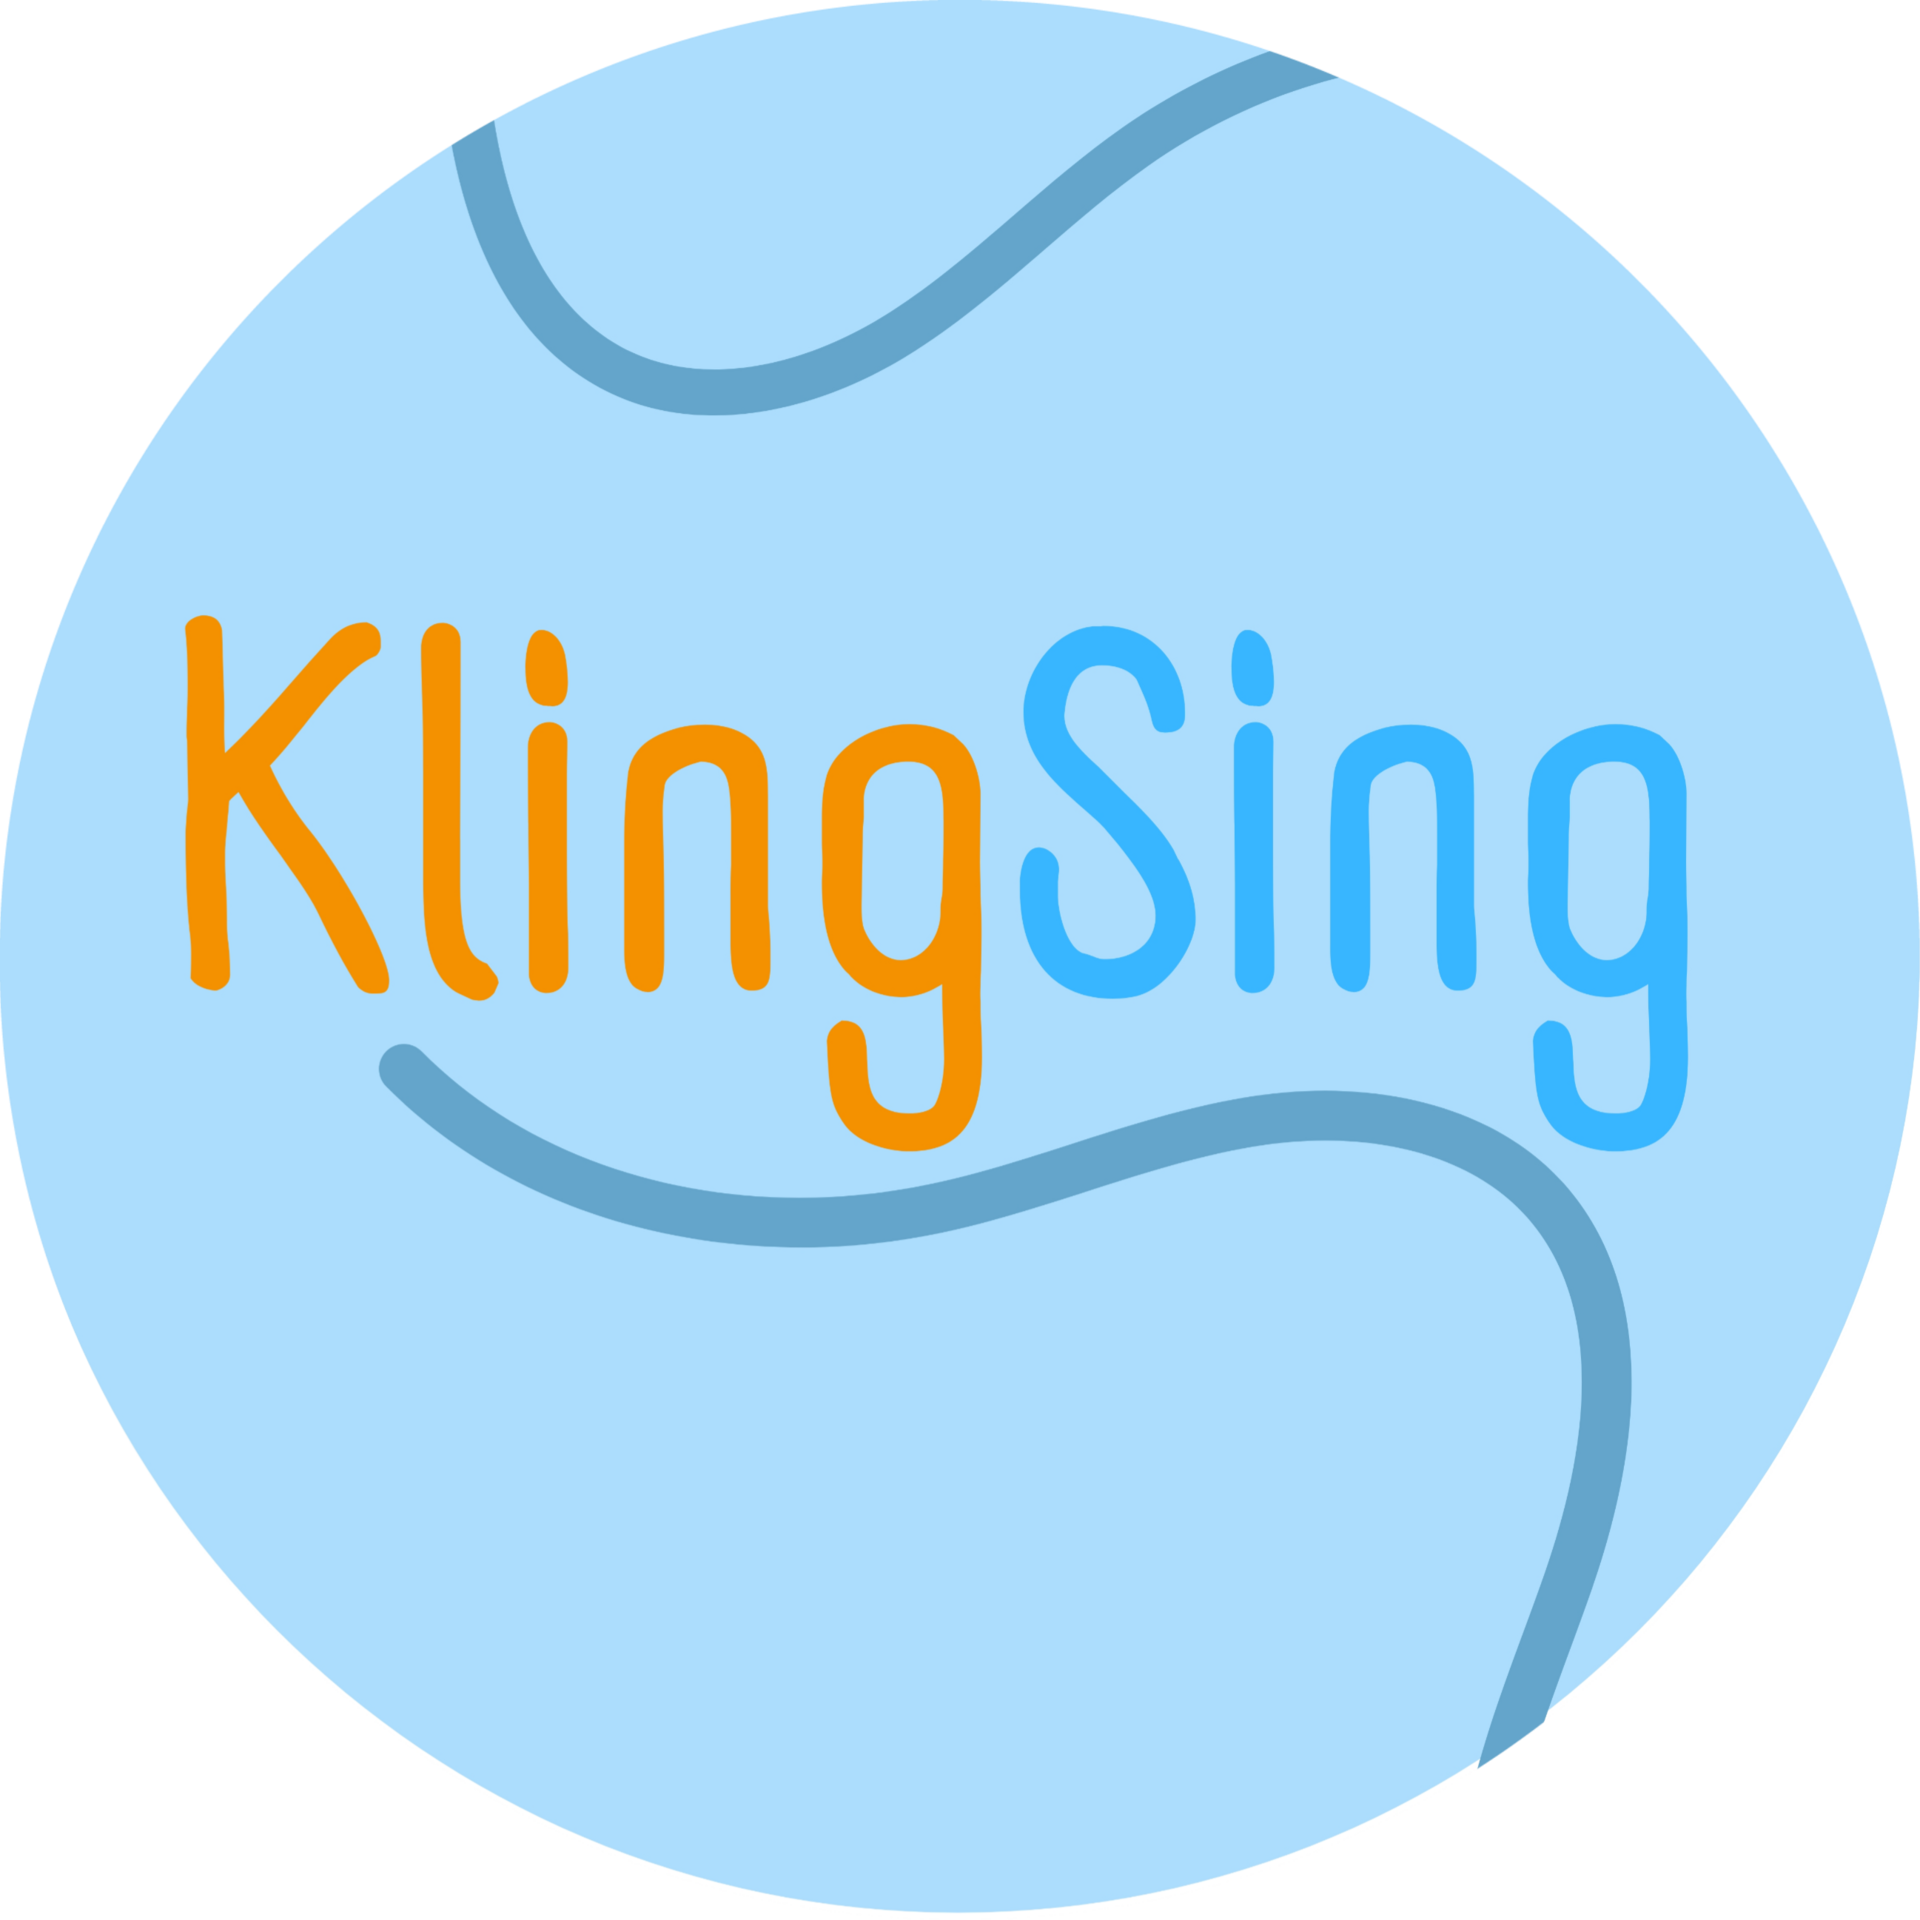 KlingSing